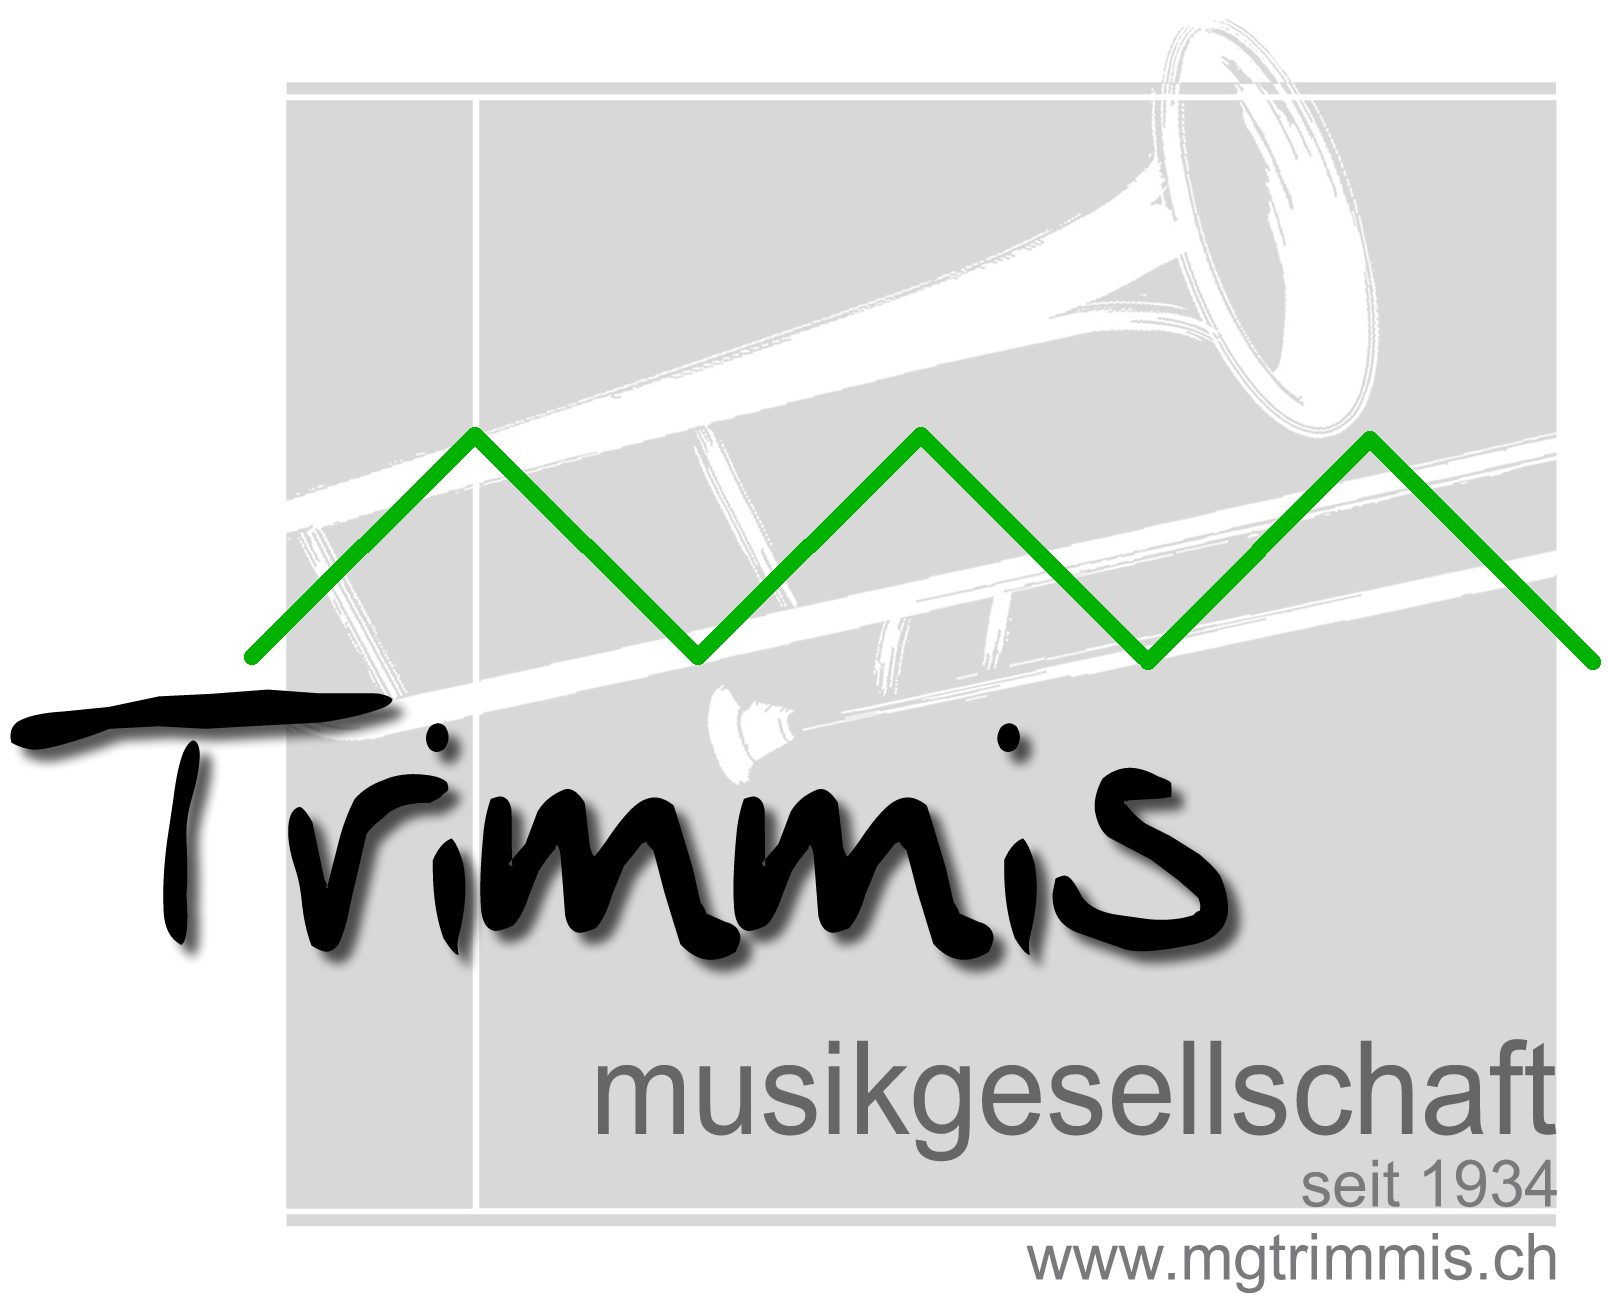 Musikgesellschaft Trimmis